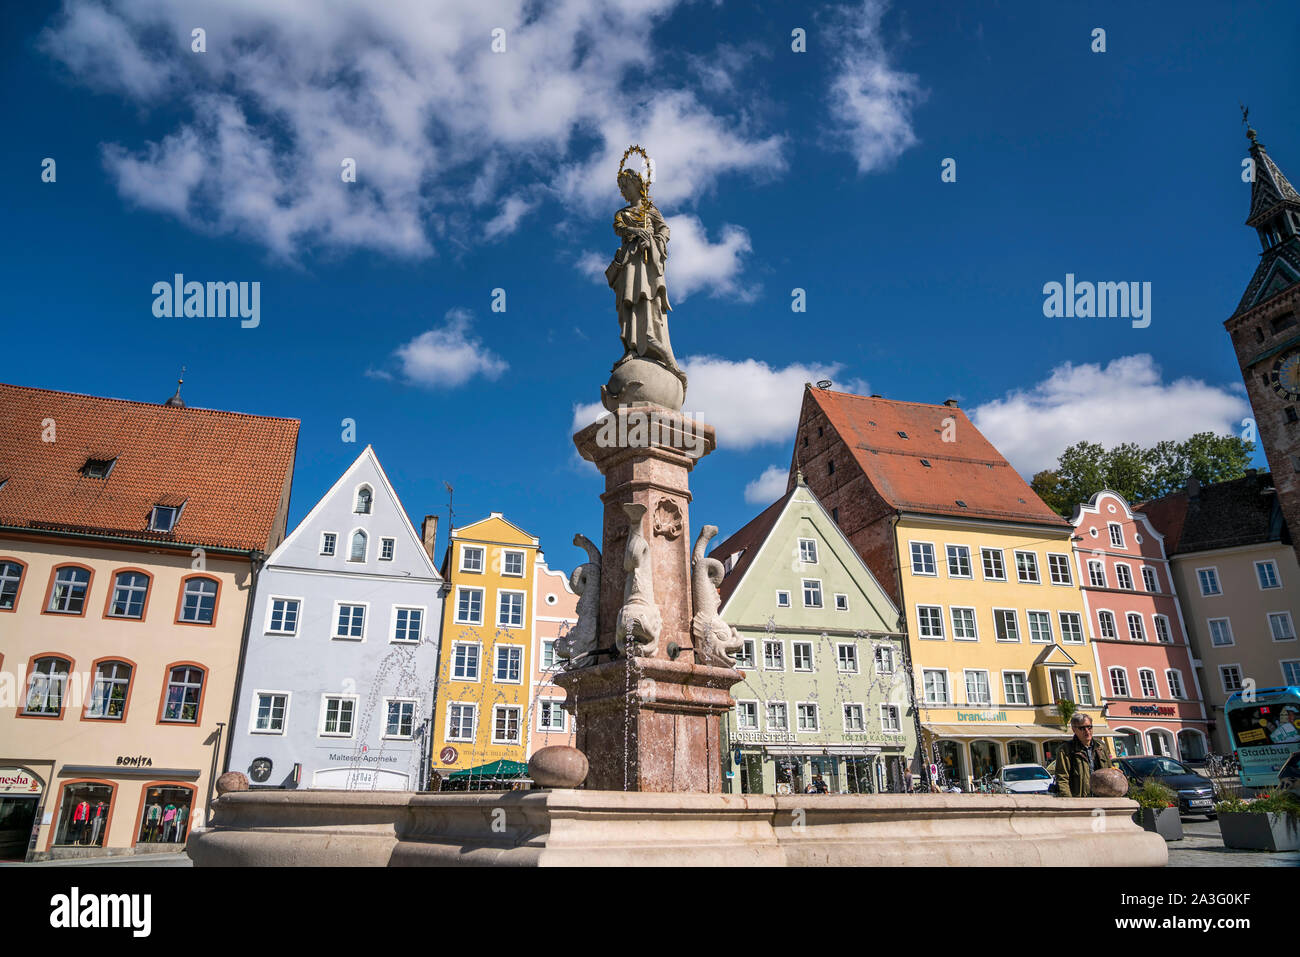 Hauptplatz mit Marienbrunnen in der historischen Altstadt, Landsberg am Lech, Oberbayern, Bayern, Deutschland, Europa | Hauptplatz der historischen o Stockfoto